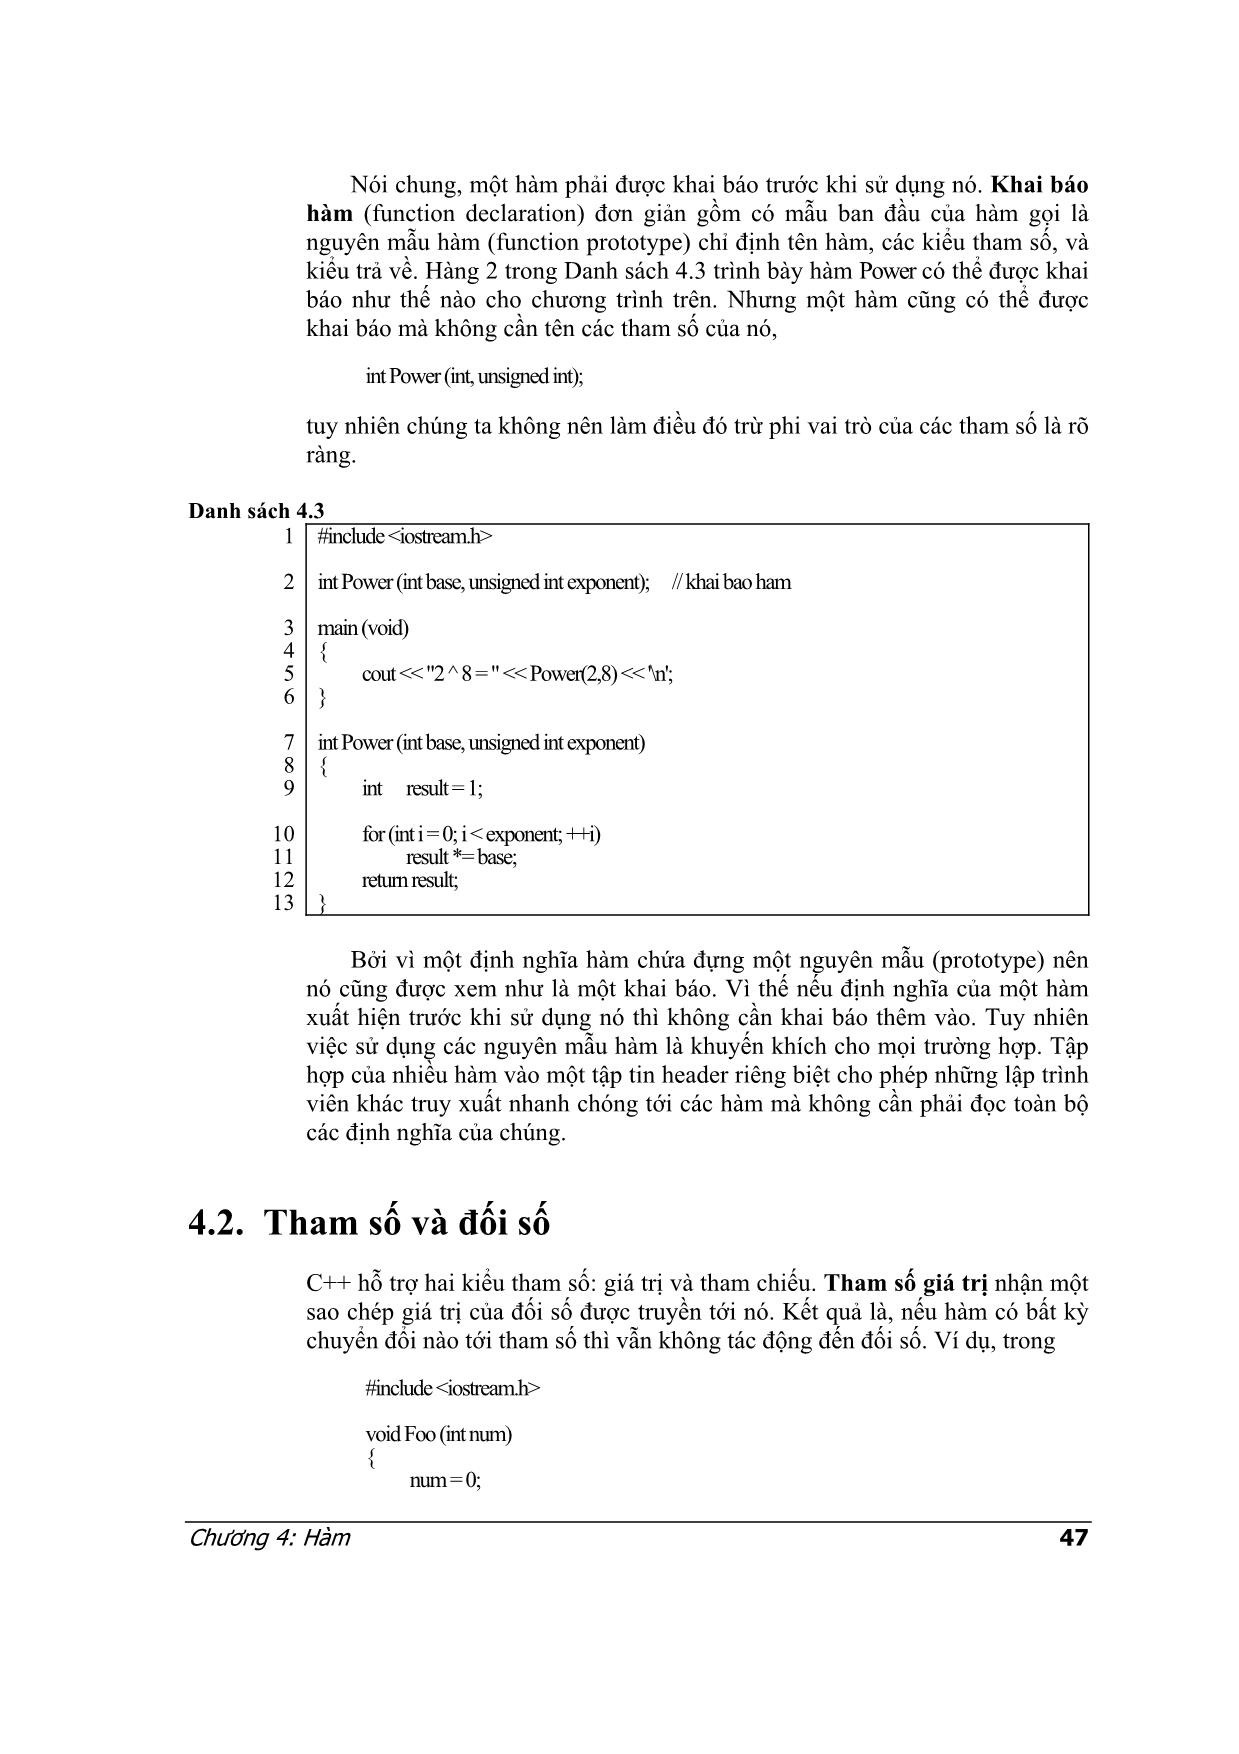 Lập trình C++ - Chương 4: Hàm trang 3